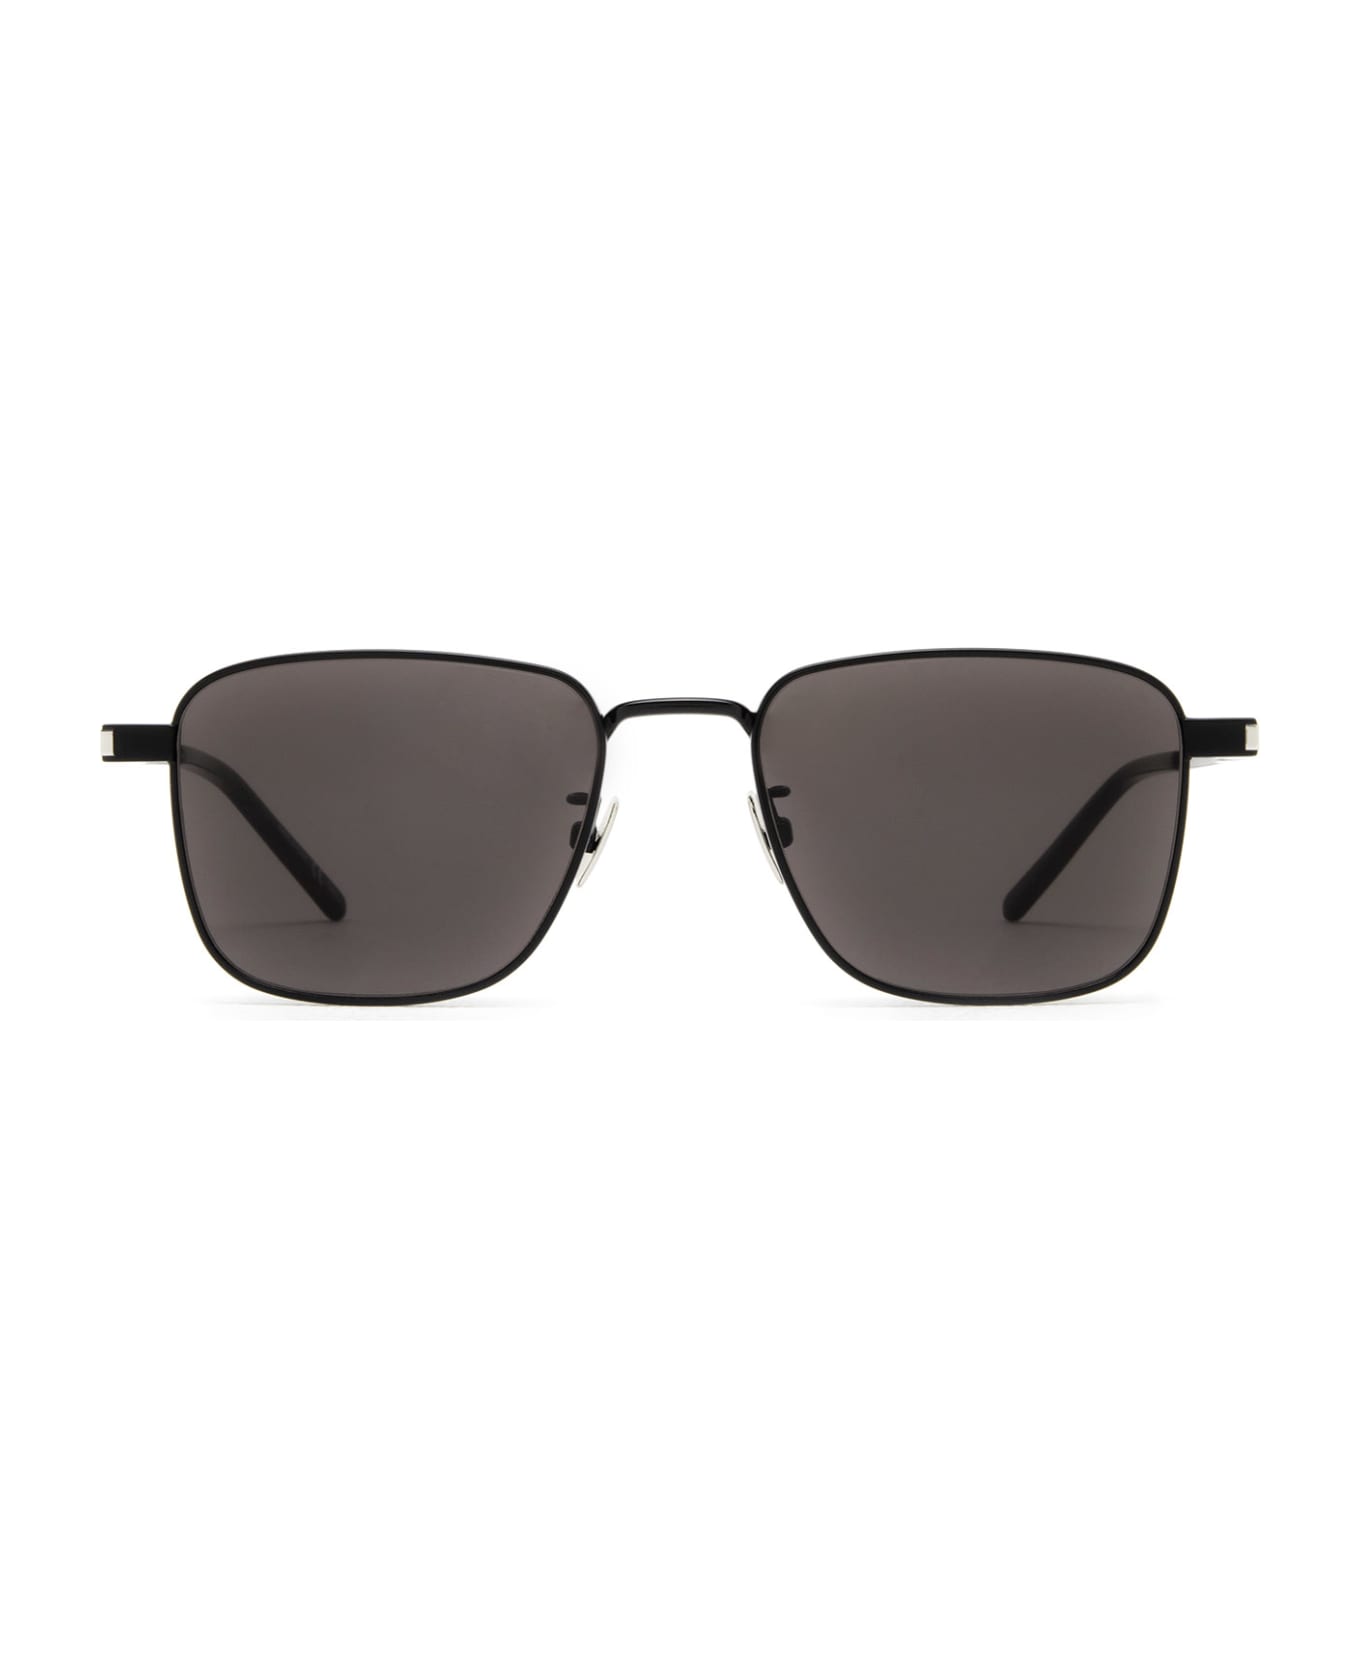 Saint Laurent Eyewear Sl 529 Black Sunglasses - Black